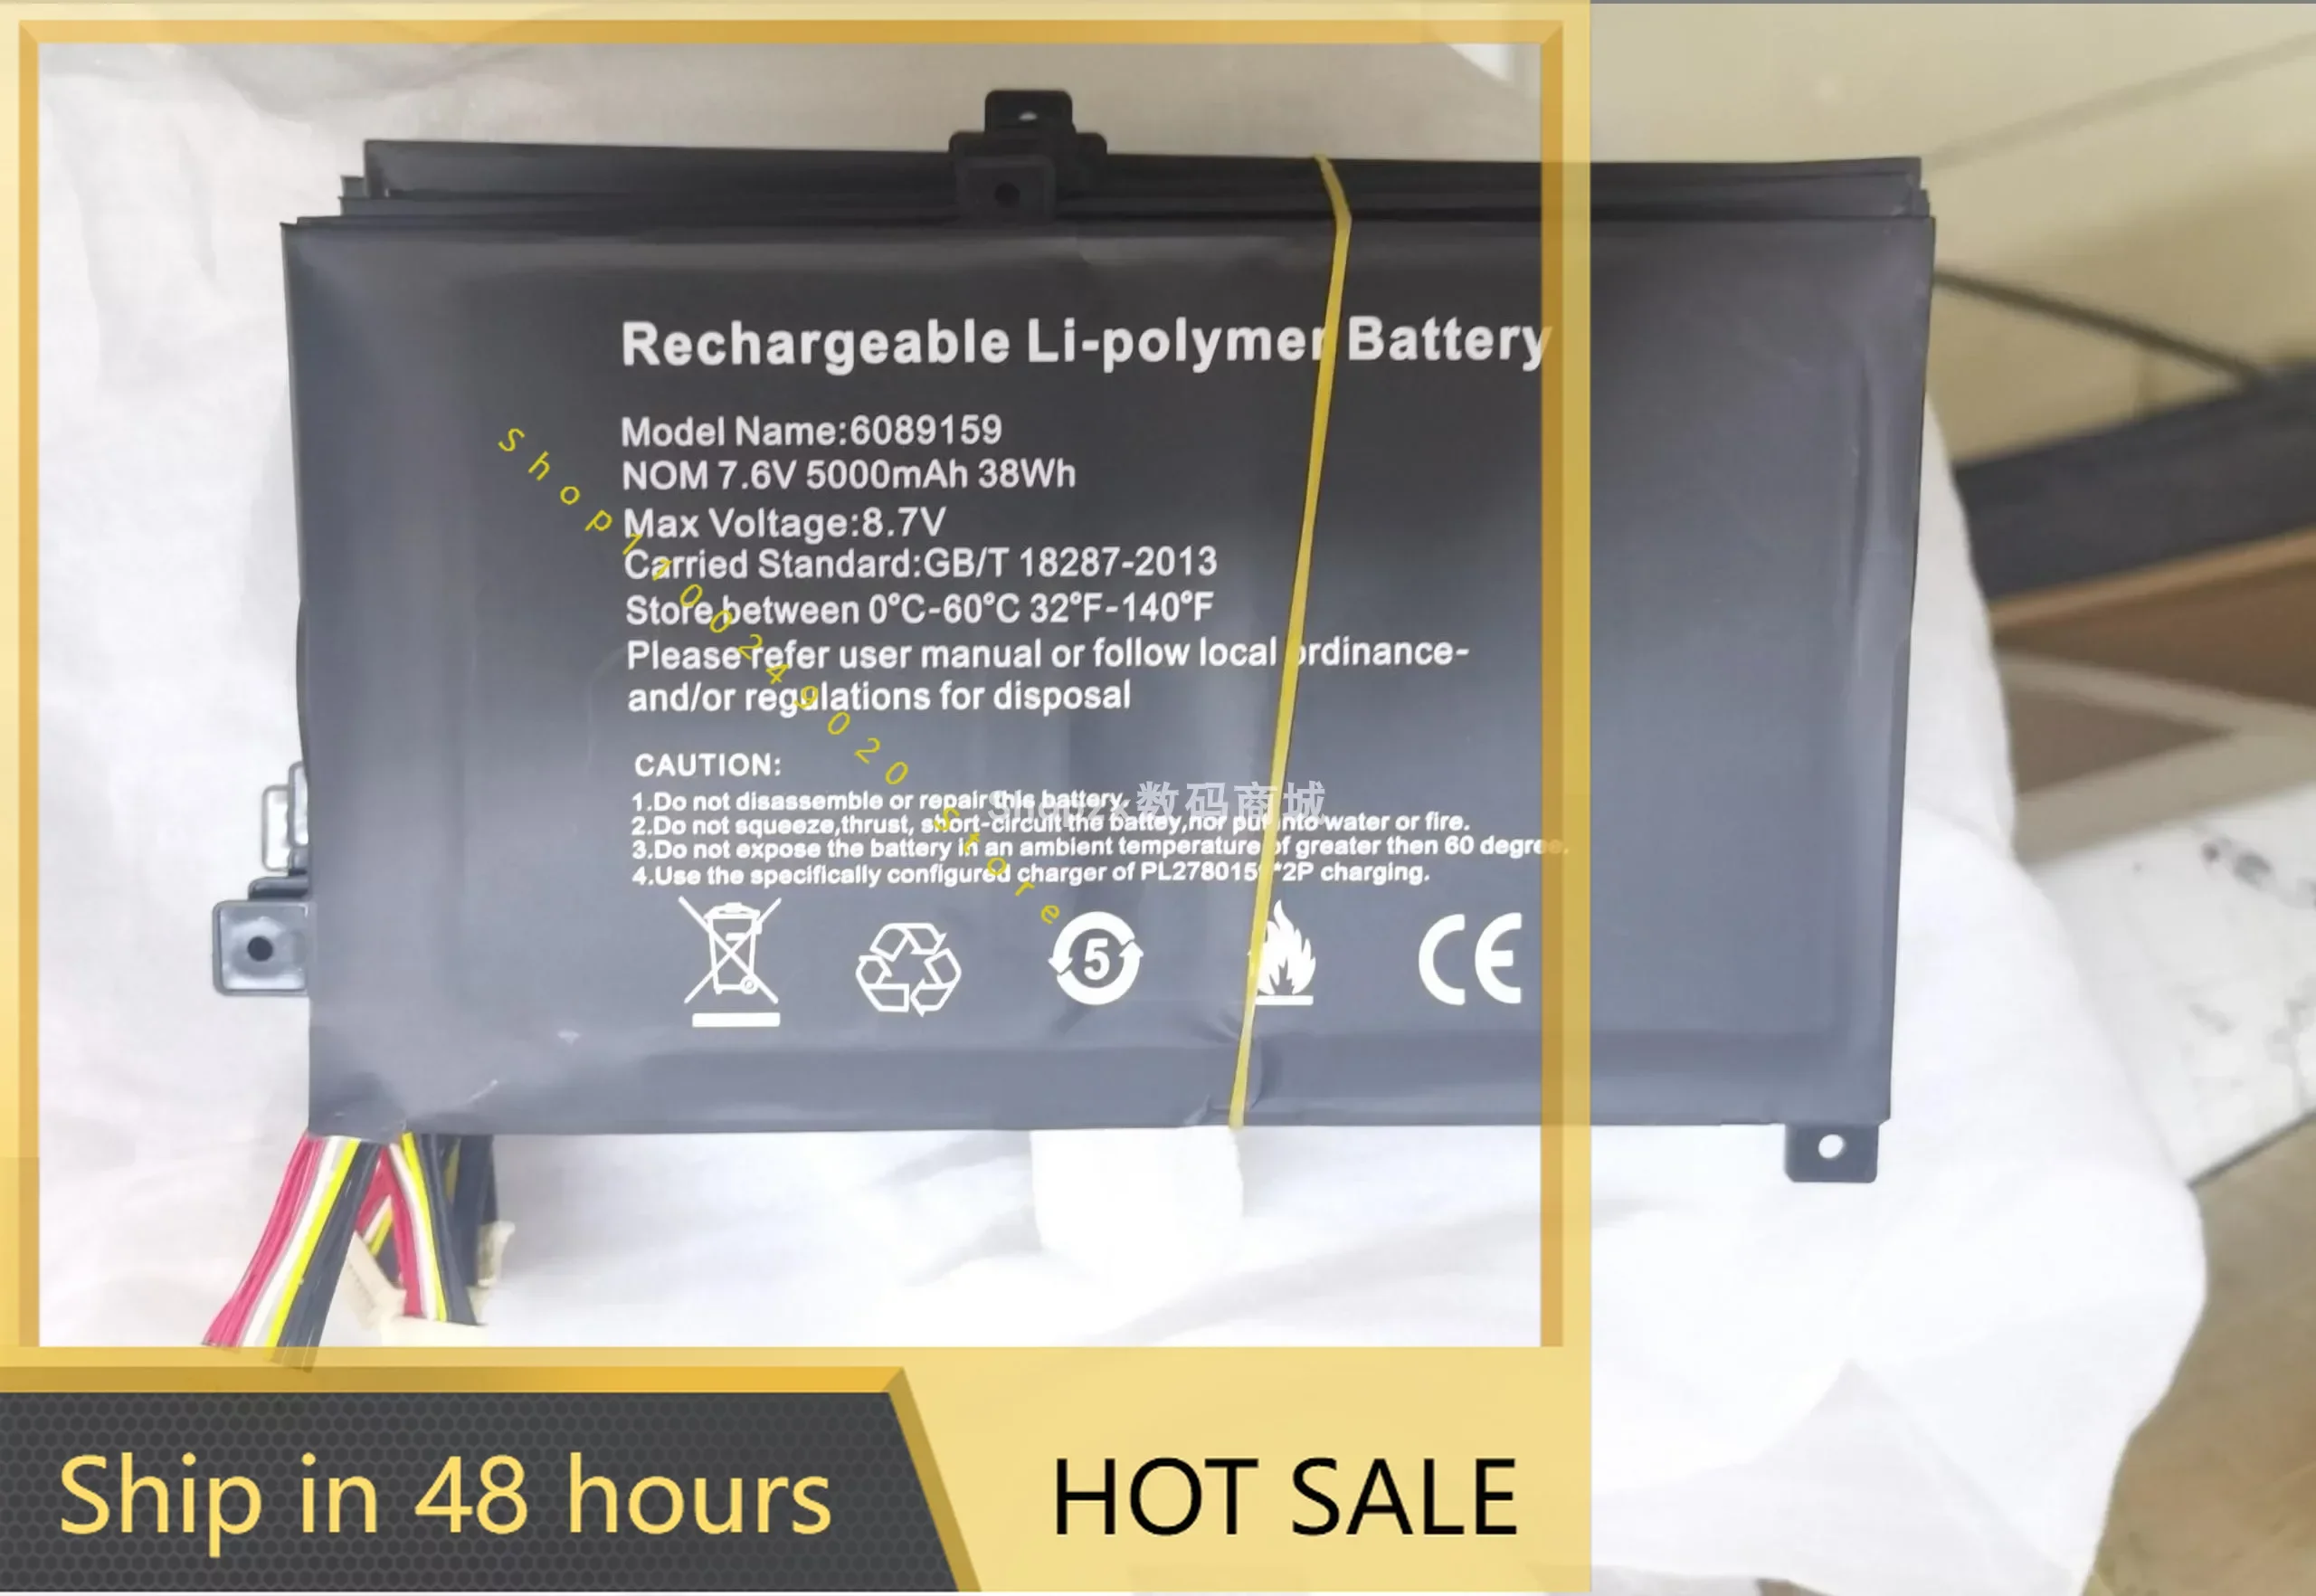 2024-for-new-6089159-677v-5000mah-battery